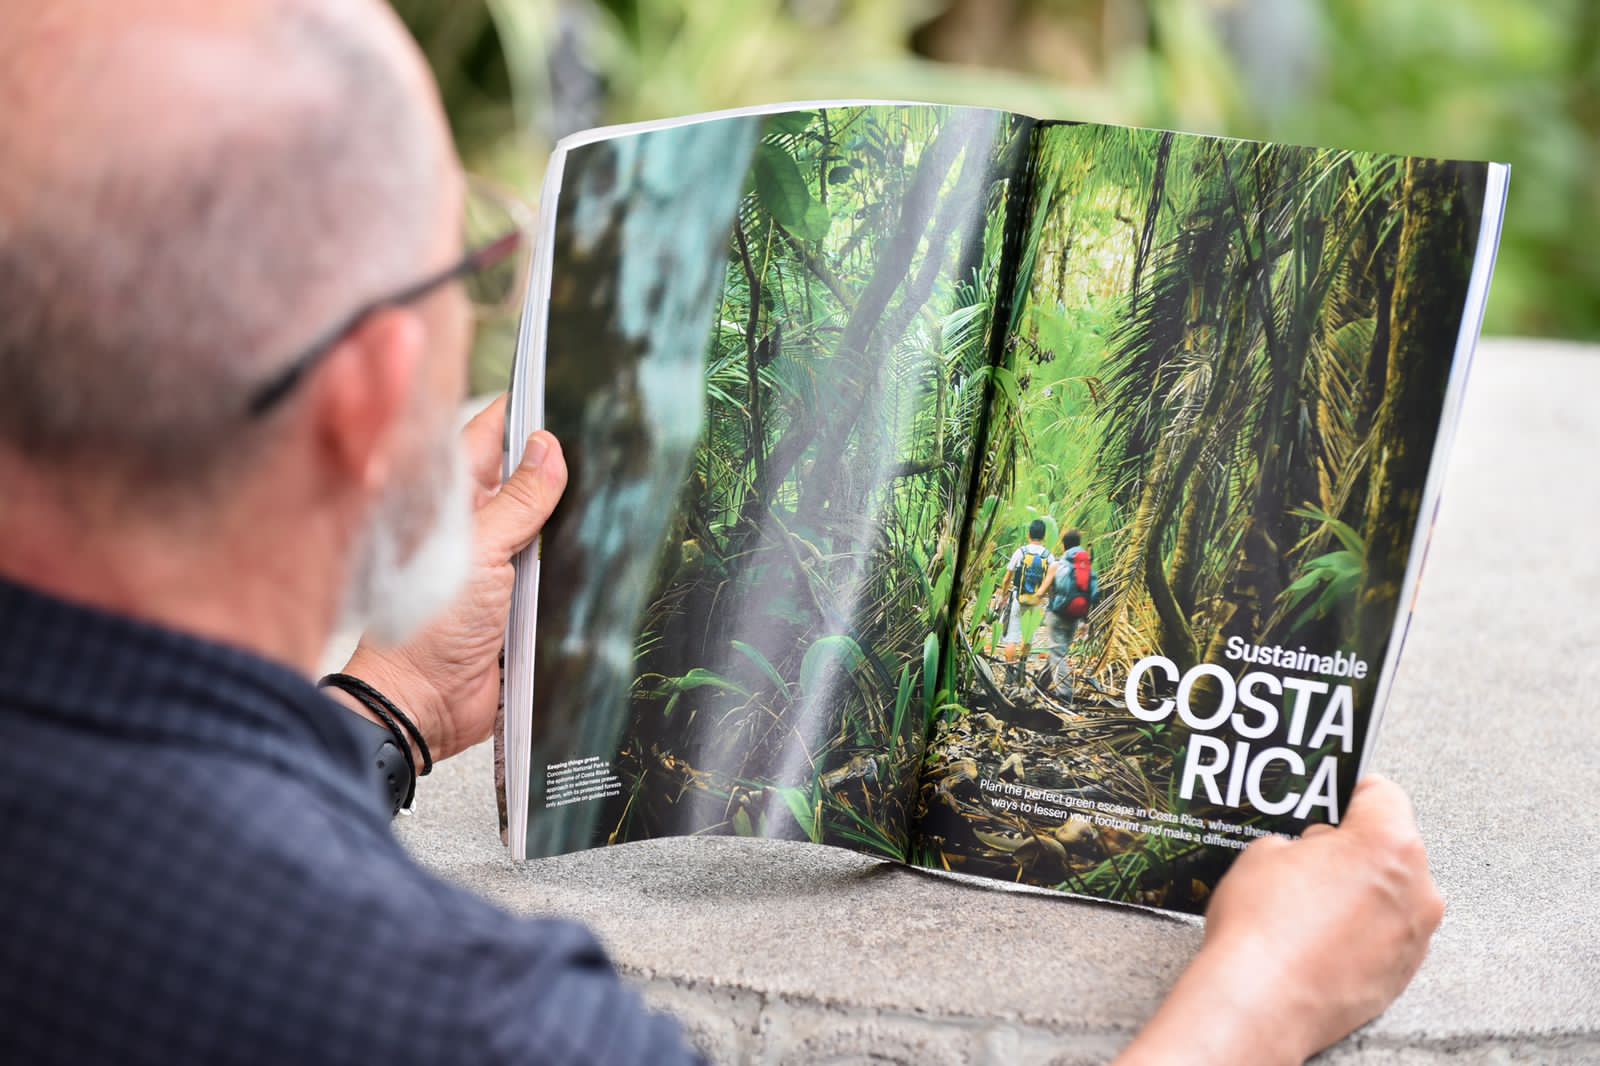 Revista de Reino Unido describe a Costa Rica como el lugar perfecto para una “escapada ecológica”